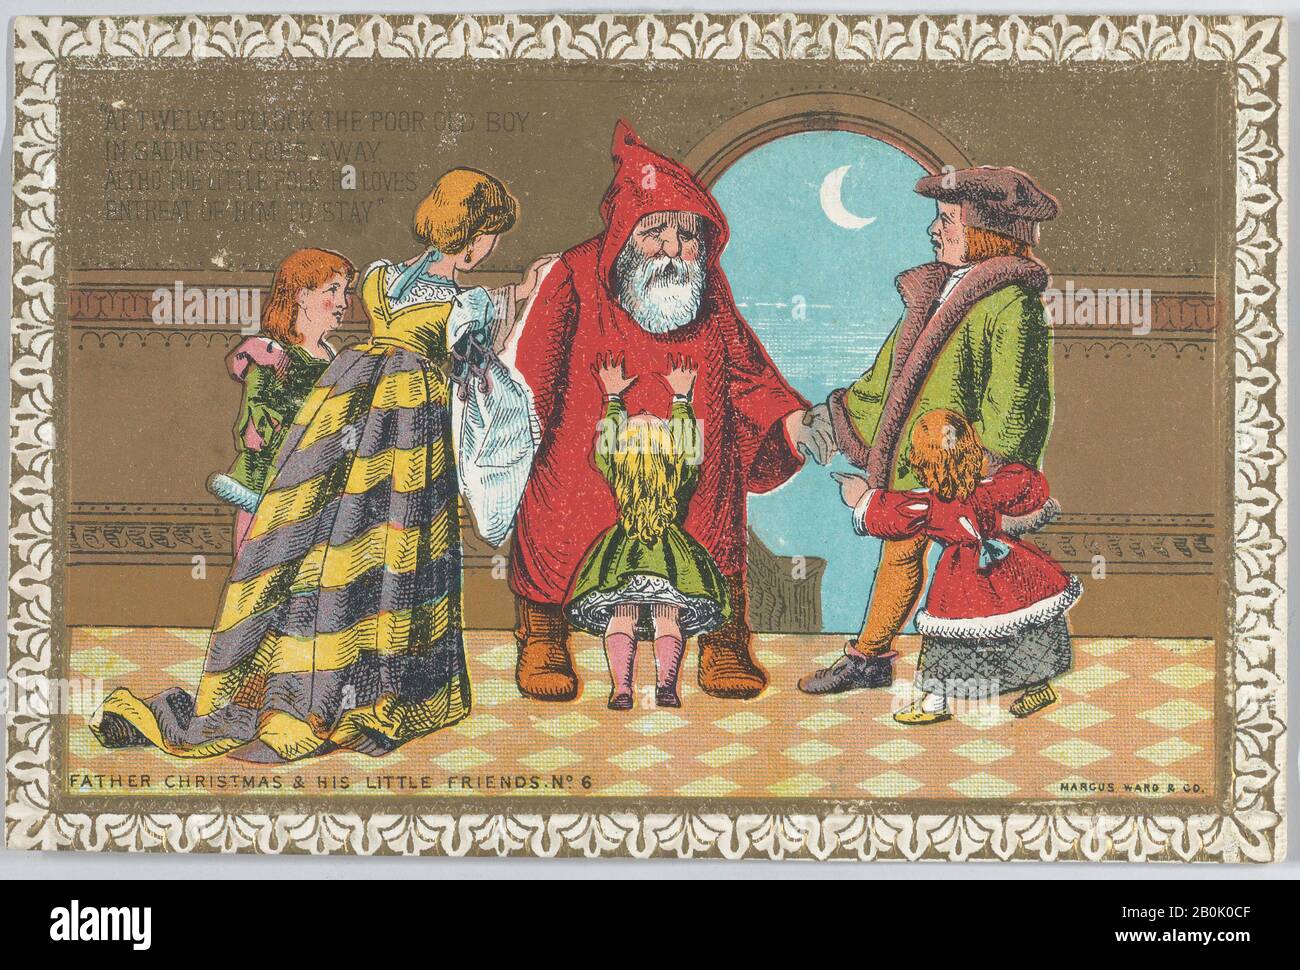 Anonyme, Valentine, Anonymous, 1880, carte blanche, chromolithographie, lithographie d'or, gaufrage de caméo, largeur: 4 po. (10,1 cm), longueur : 2 5/8 po. (6,6 cm Banque D'Images